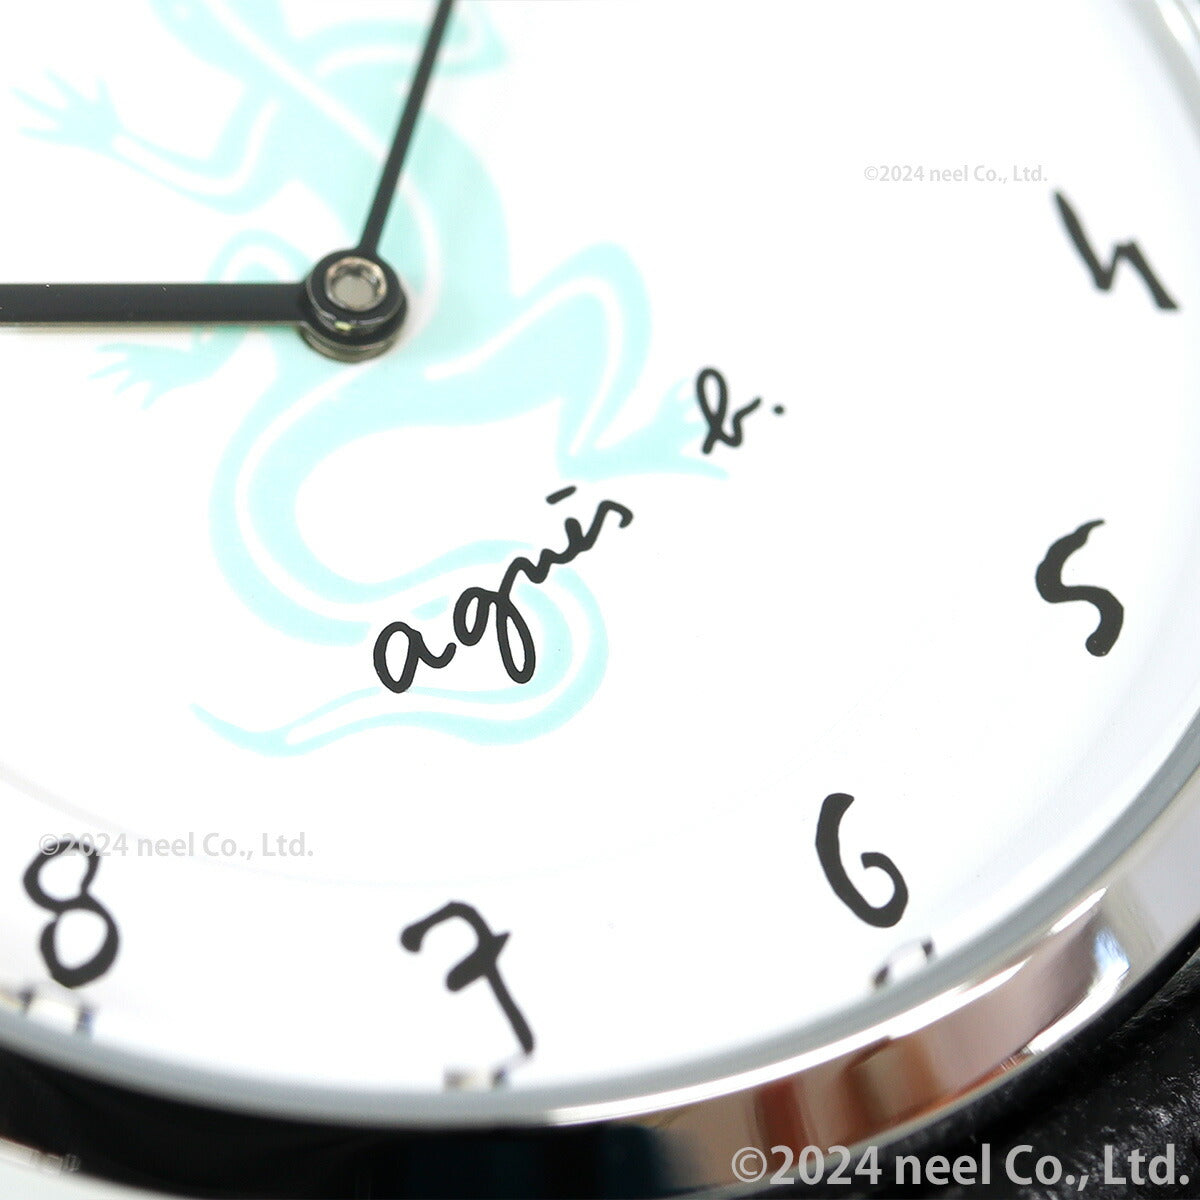 アニエスベー 時計 アニエスベーウオッチ35周年記念 限定モデル 腕時計 agnes b. マルチェロ FCSK754【2024 新作】